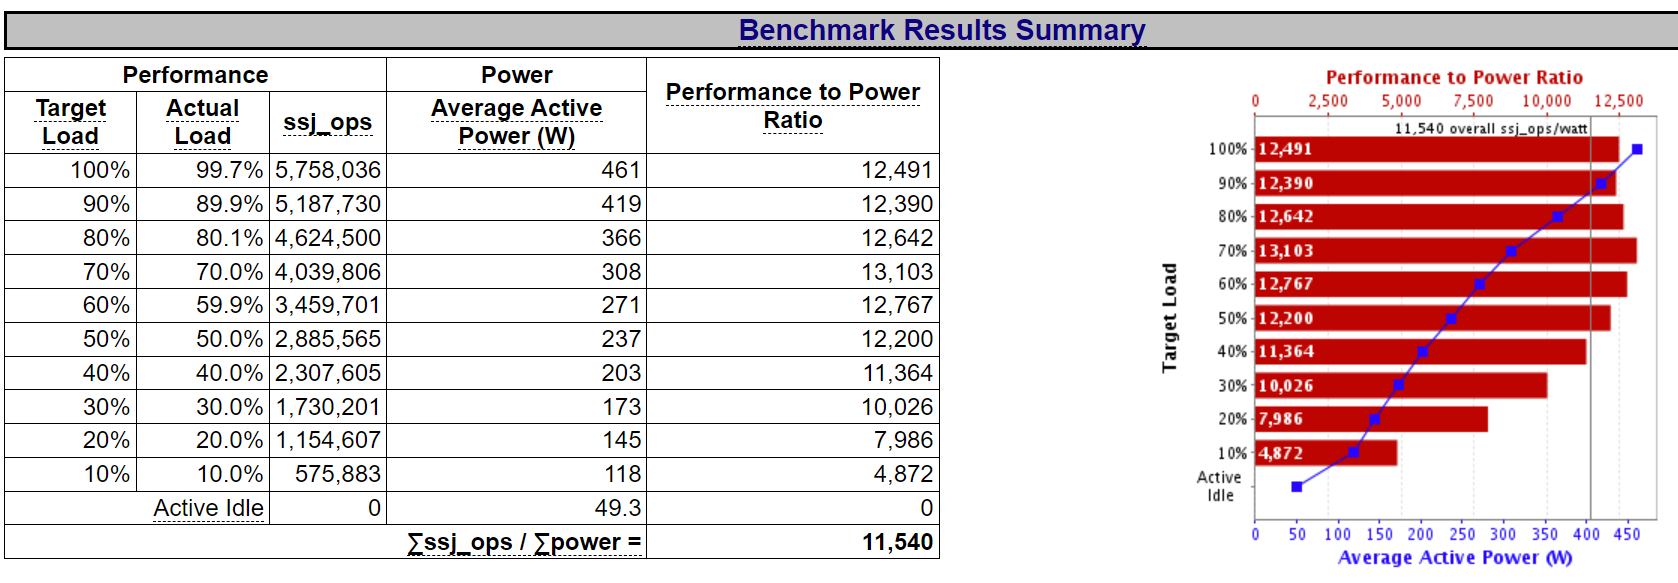 spec-power-benchmark-summary